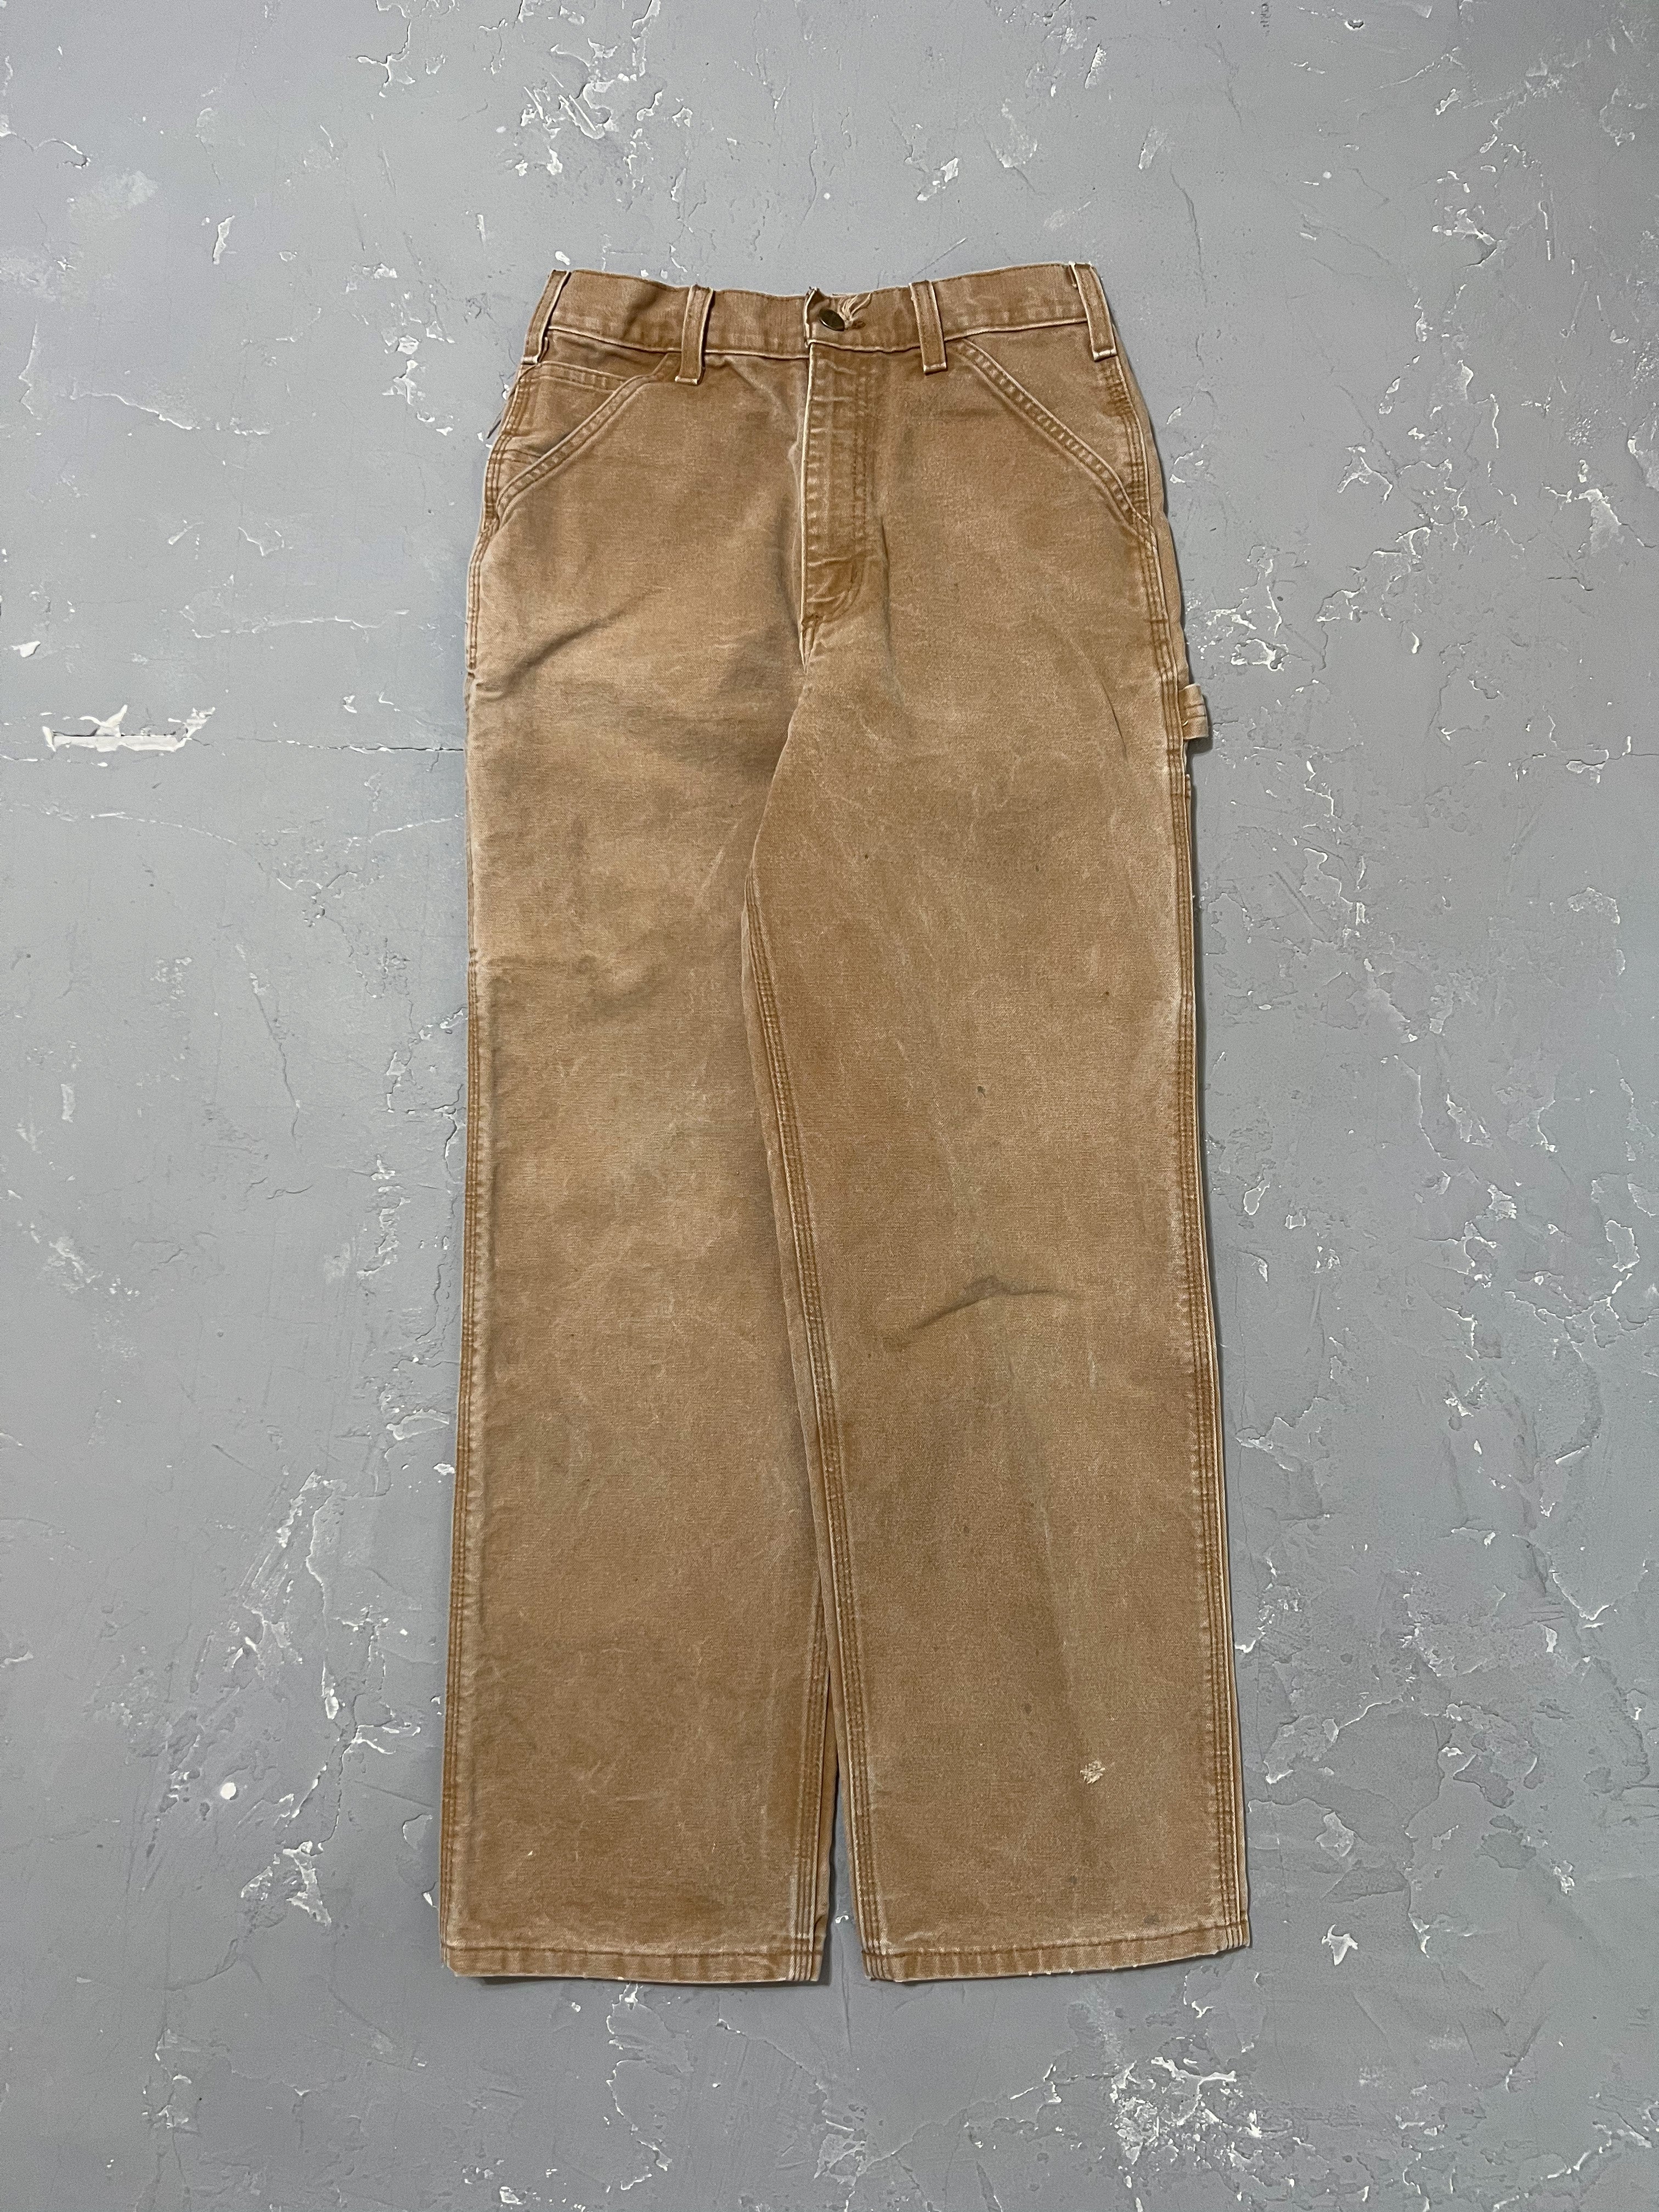 Carhartt Sun Faded Carpenter Pants [27 x 30]